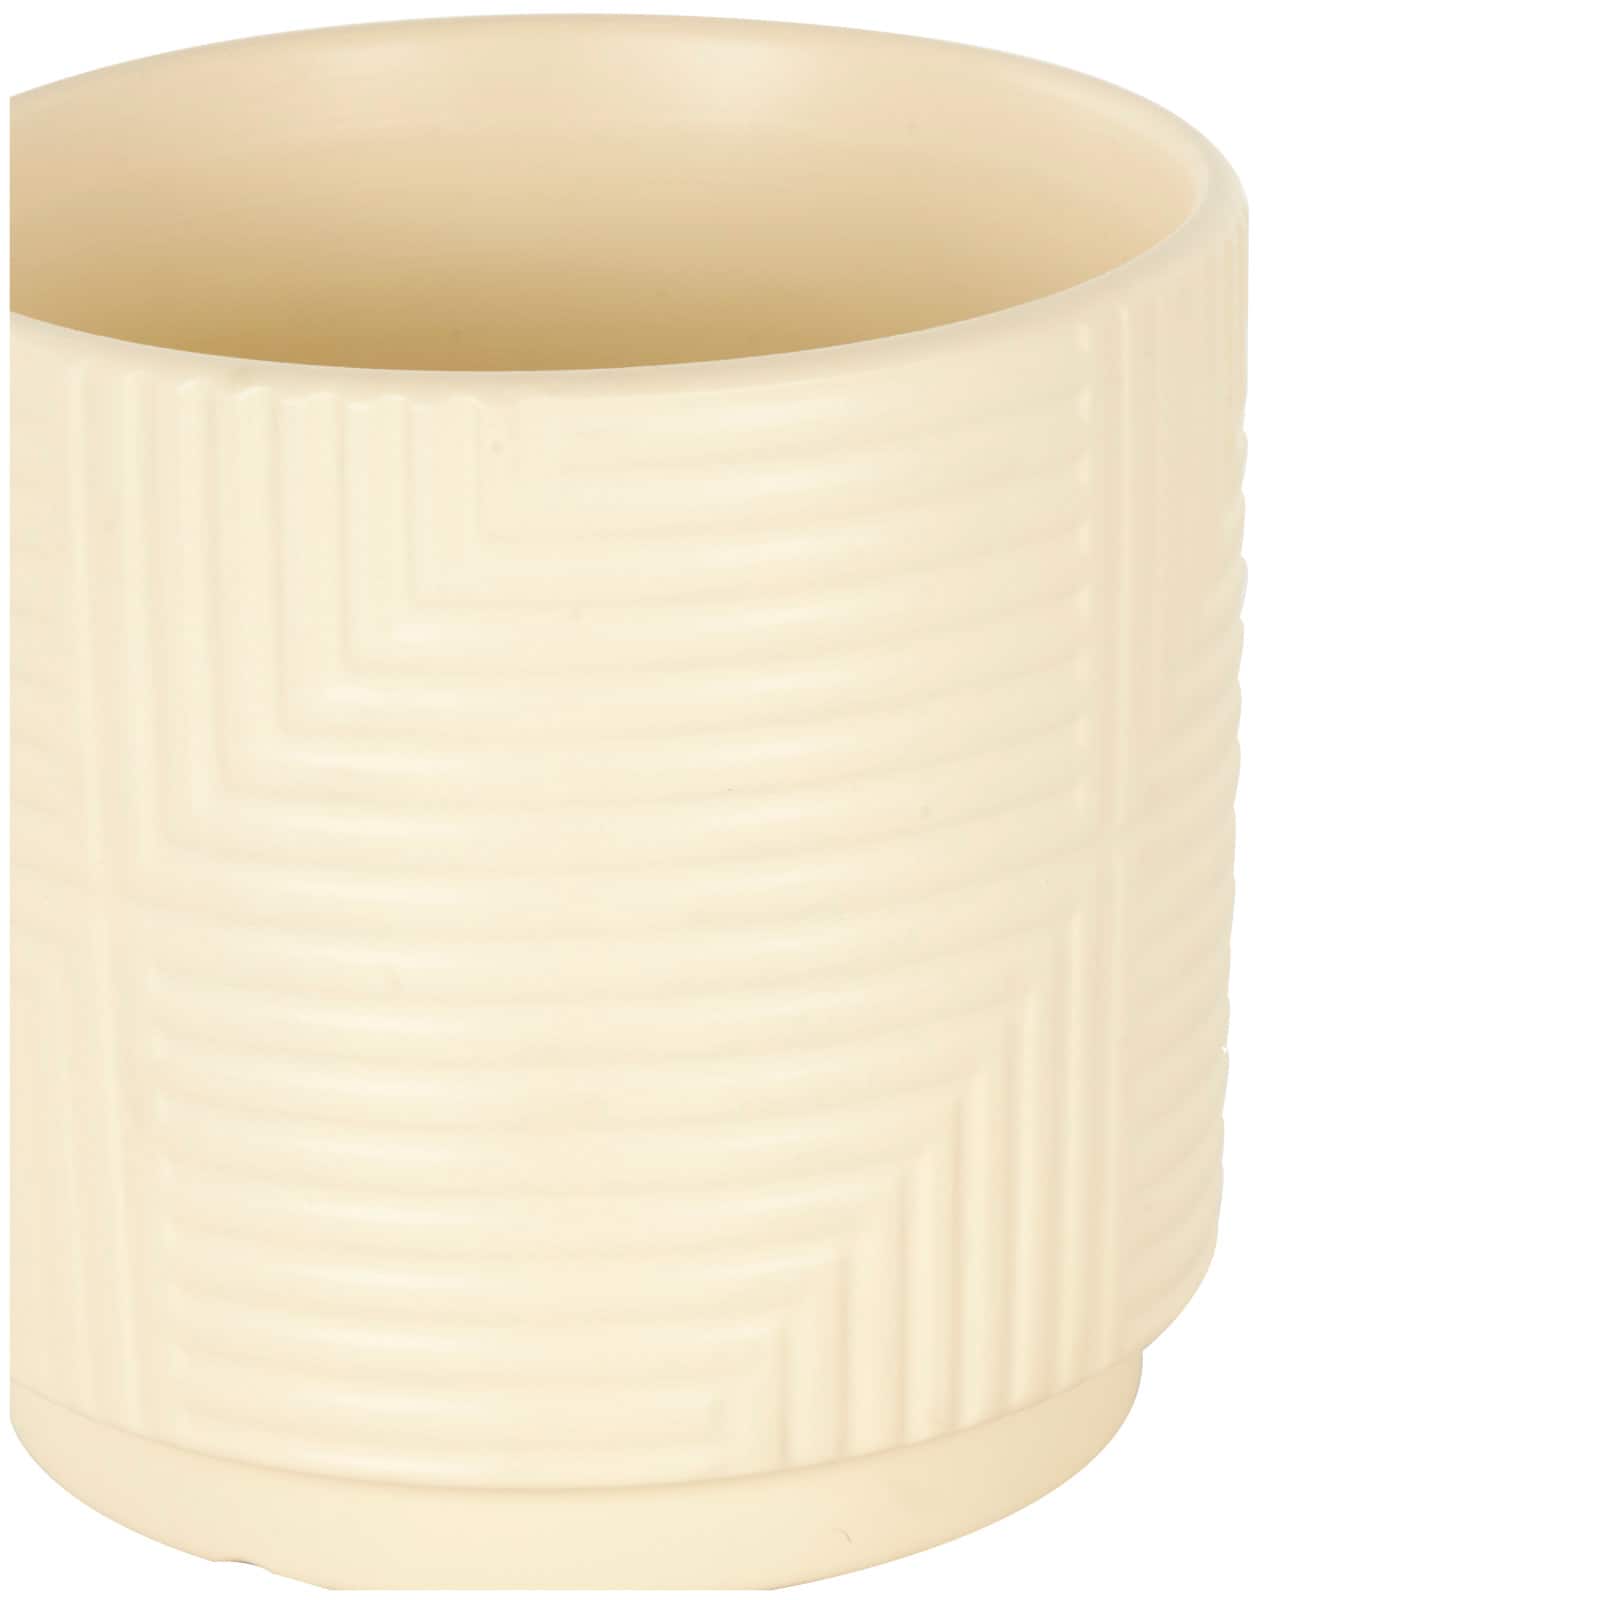 Cream Ceramic Geometric Planter Set